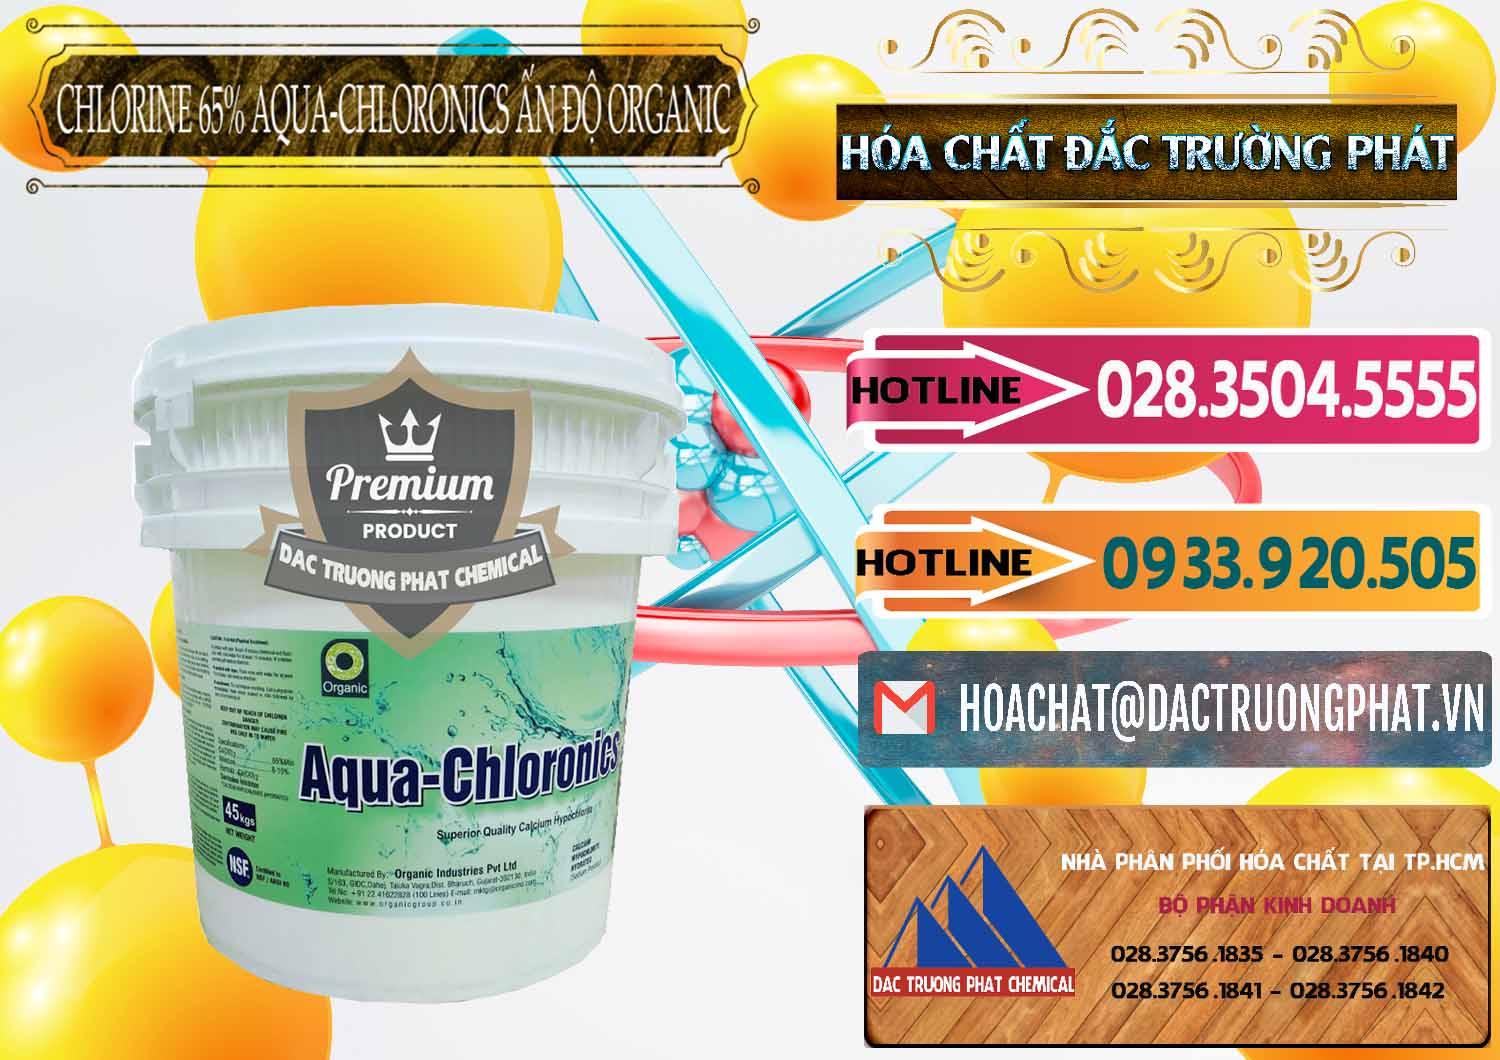 Công ty cung ứng - bán Chlorine – Clorin 65% Aqua-Chloronics Ấn Độ Organic India - 0210 - Nơi cung cấp - kinh doanh hóa chất tại TP.HCM - dactruongphat.vn